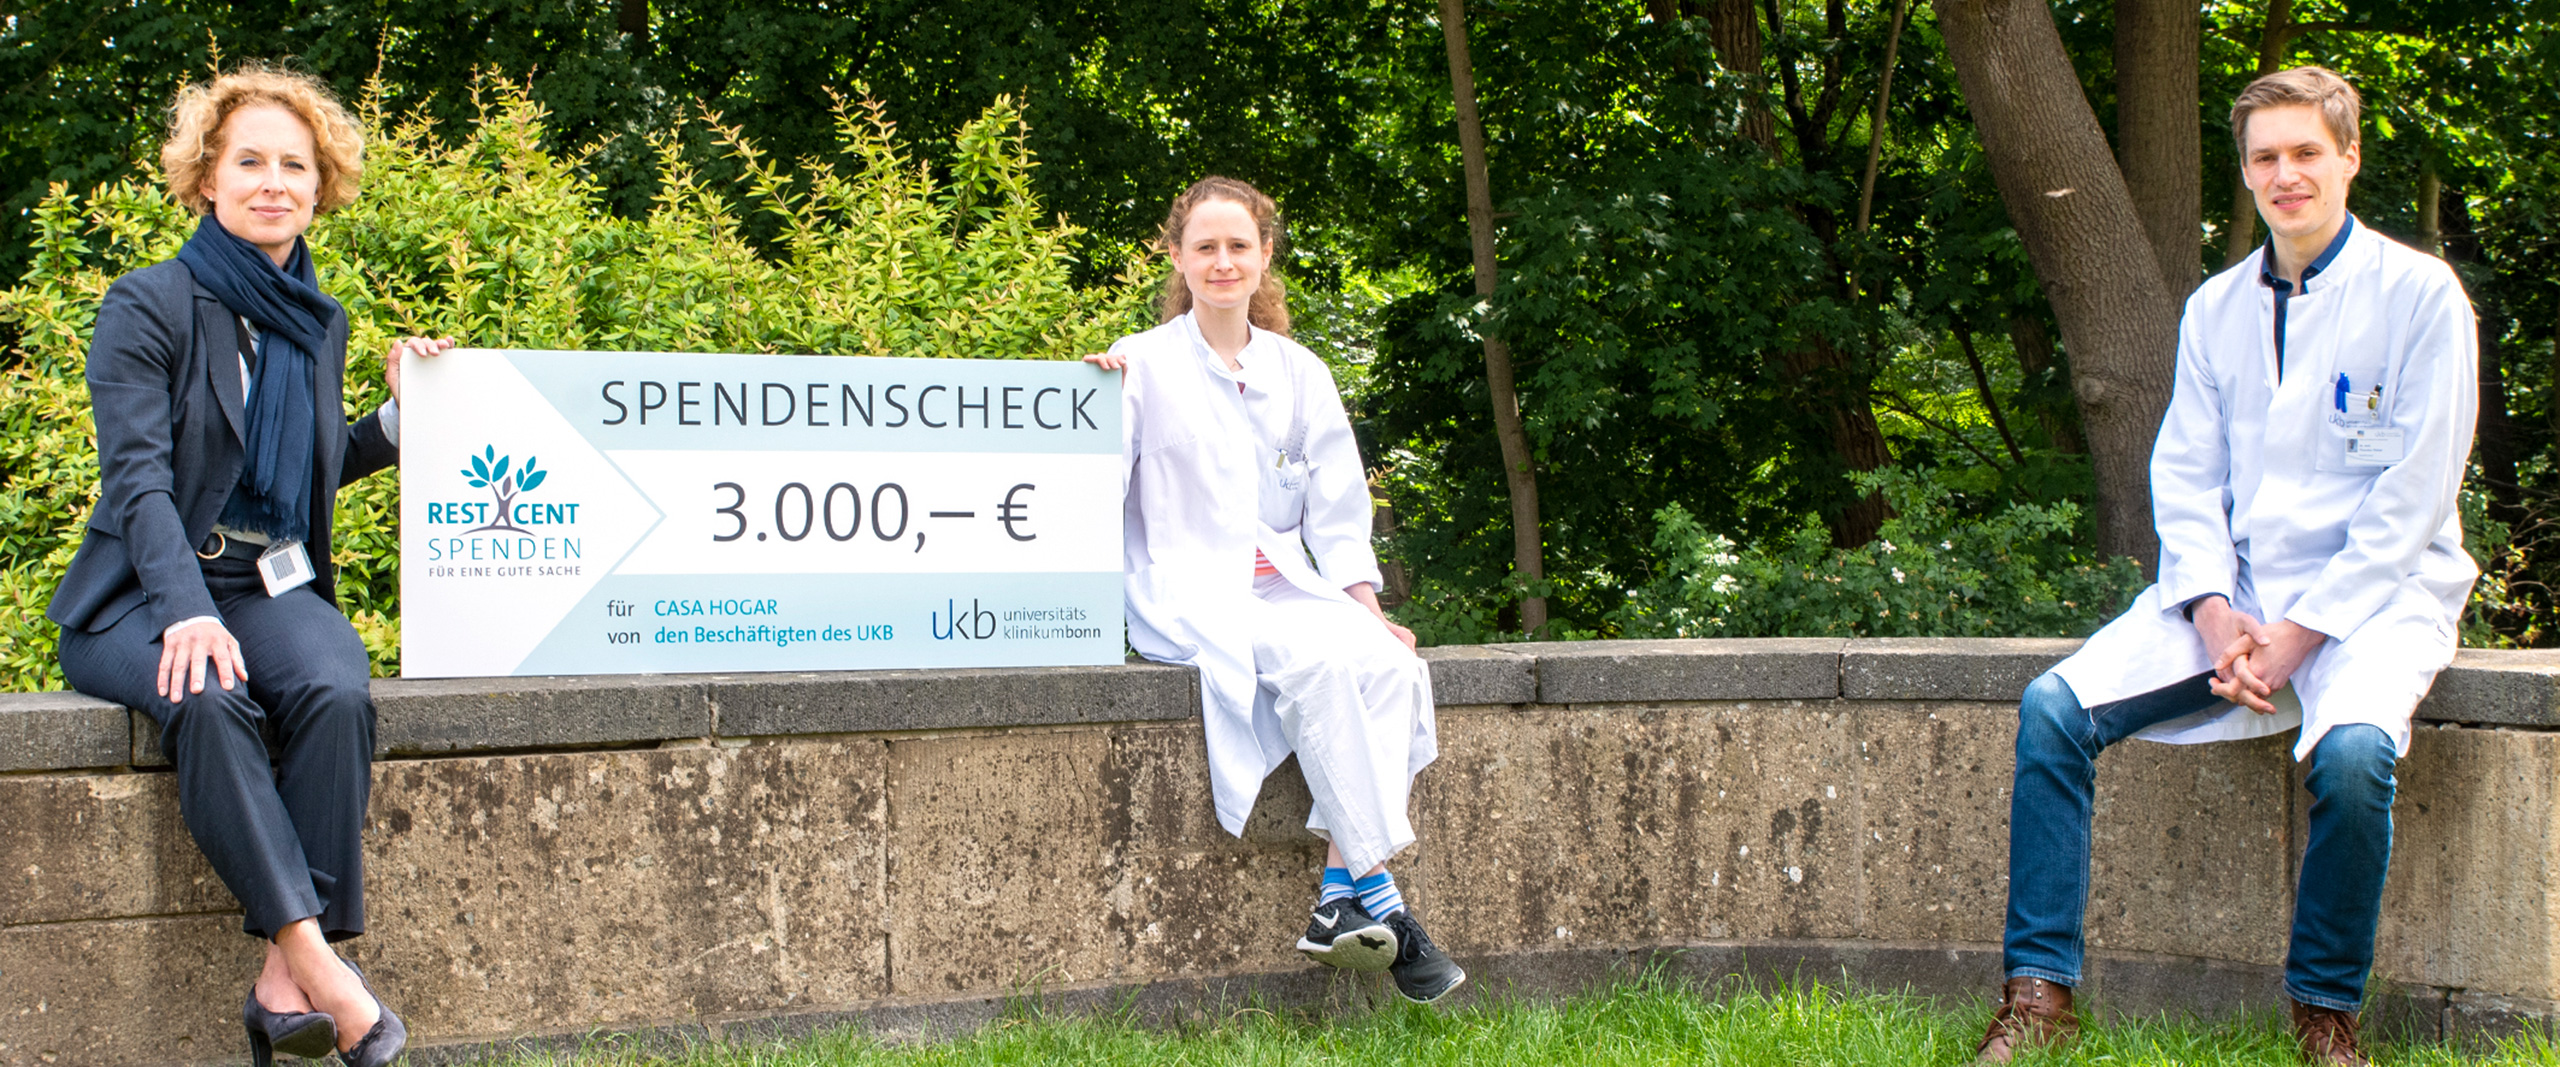 Dr. Julia Schäfer, Leiterin des Geschäftsbereichs Personalentwicklung, übergibt die Restcent-Spende